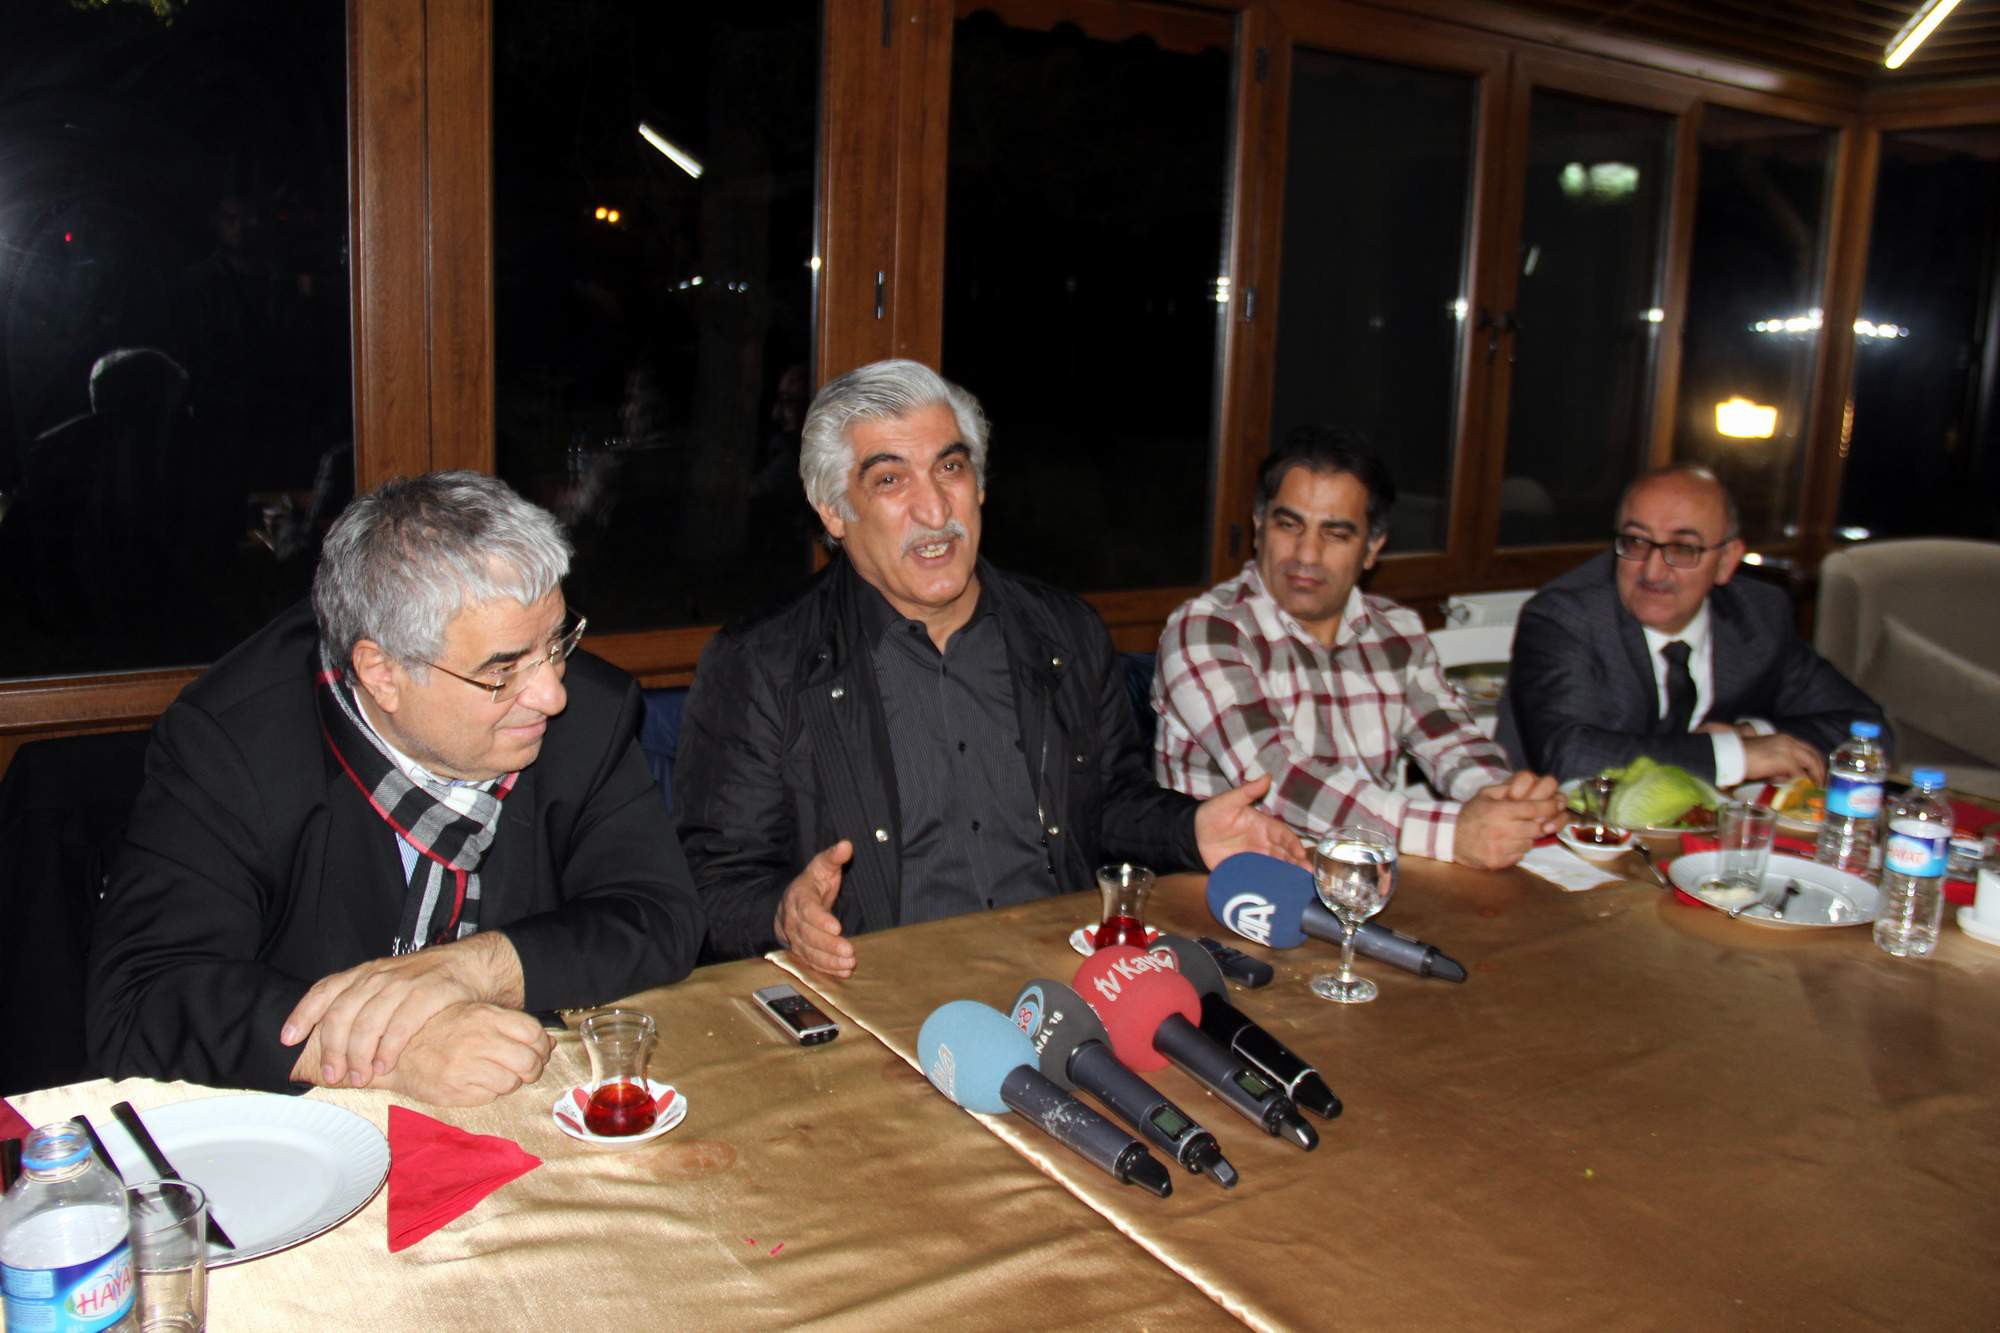 İpek Grup Yönetim Kurulu Başkanı Arslan: “Boydak Holding’i satın alma düşüncemiz yok”